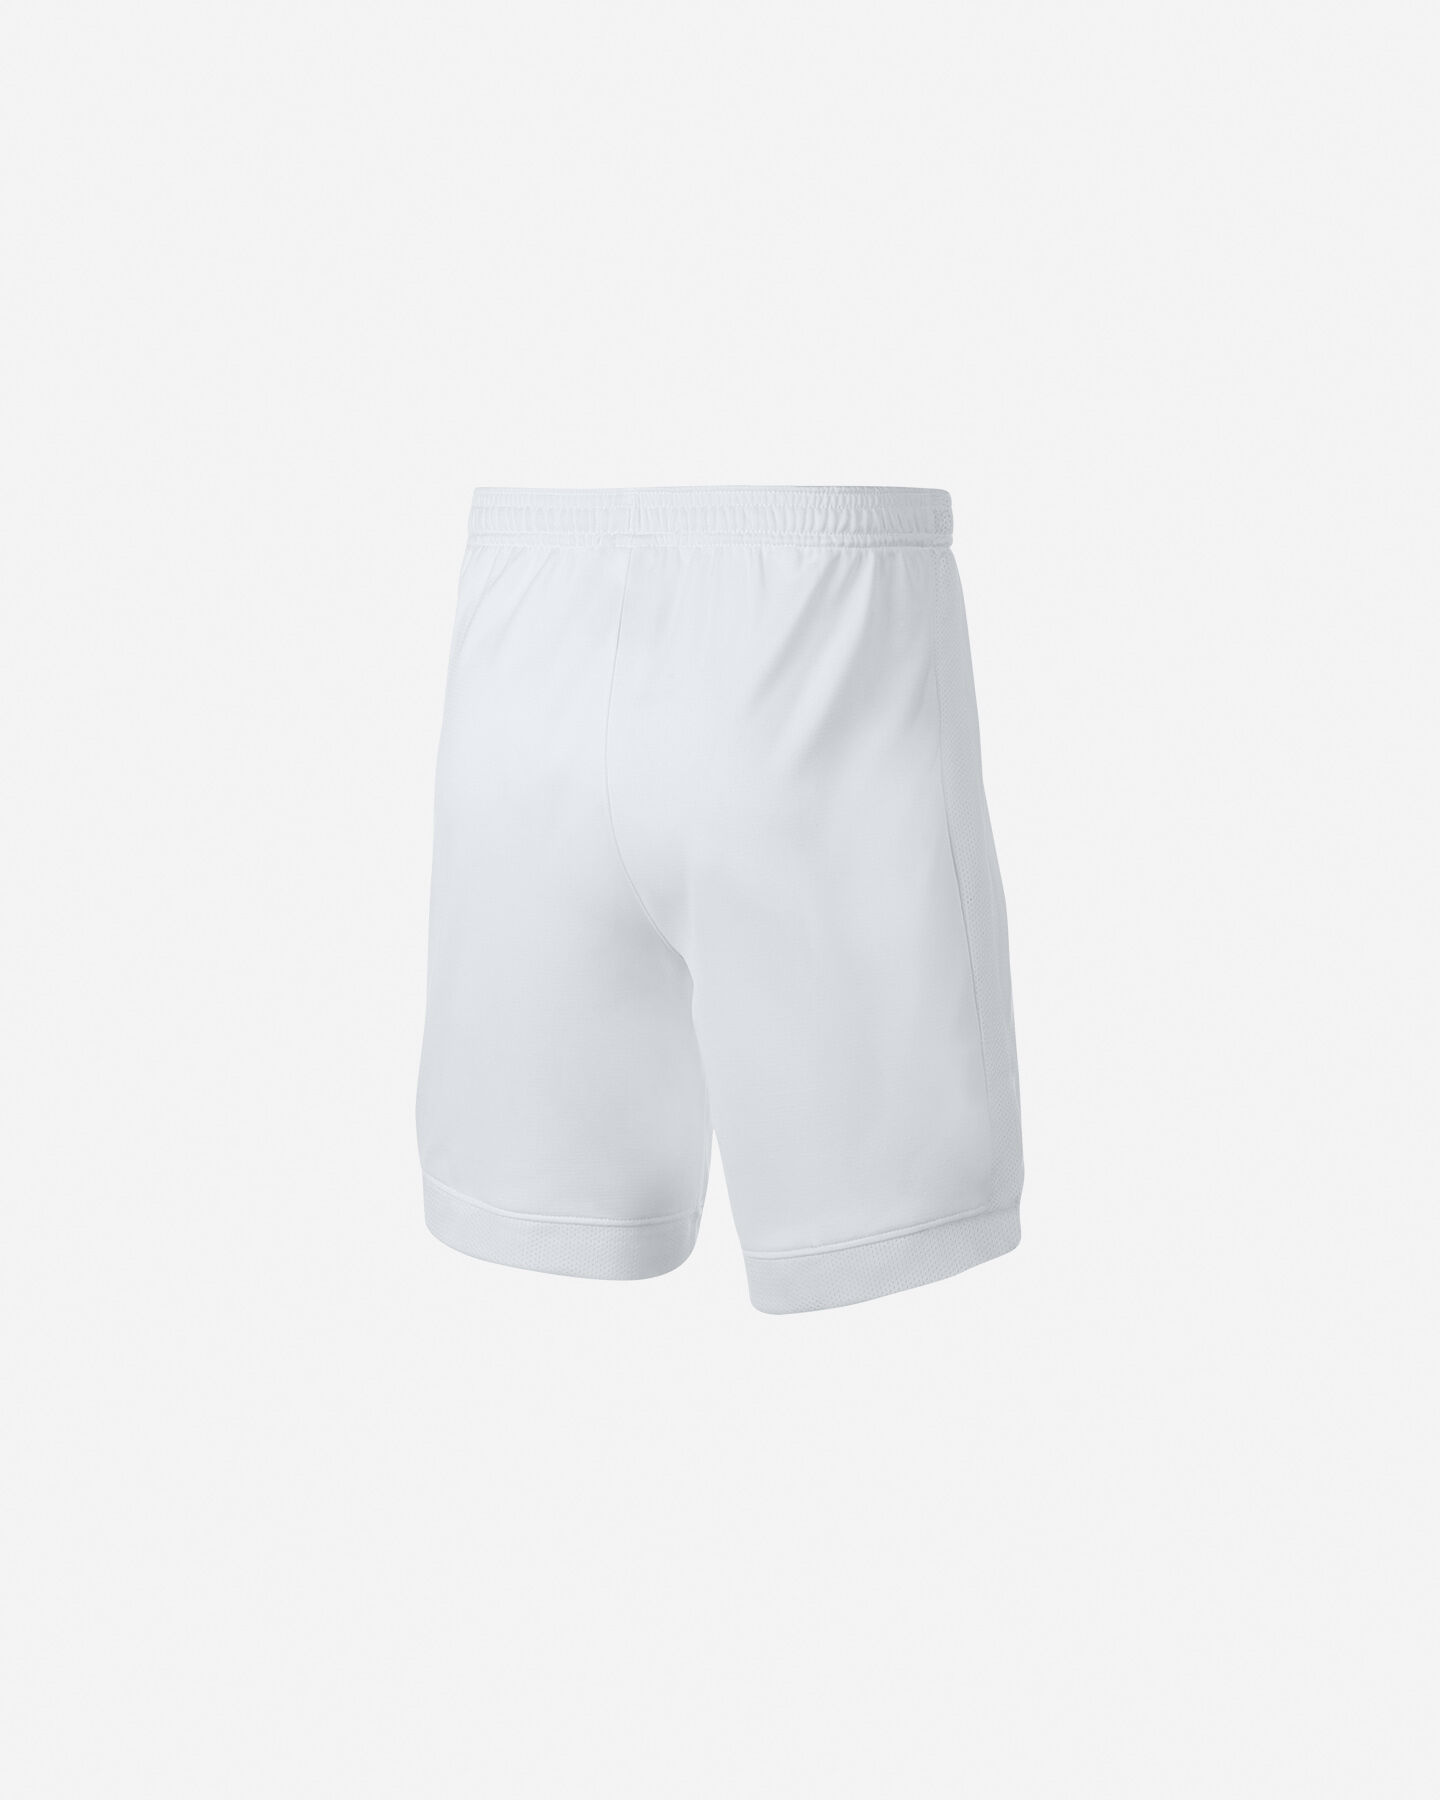  Pantaloncini calcio NIKE DRI-FIT ACADEMY JR S4063931|101|S scatto 2